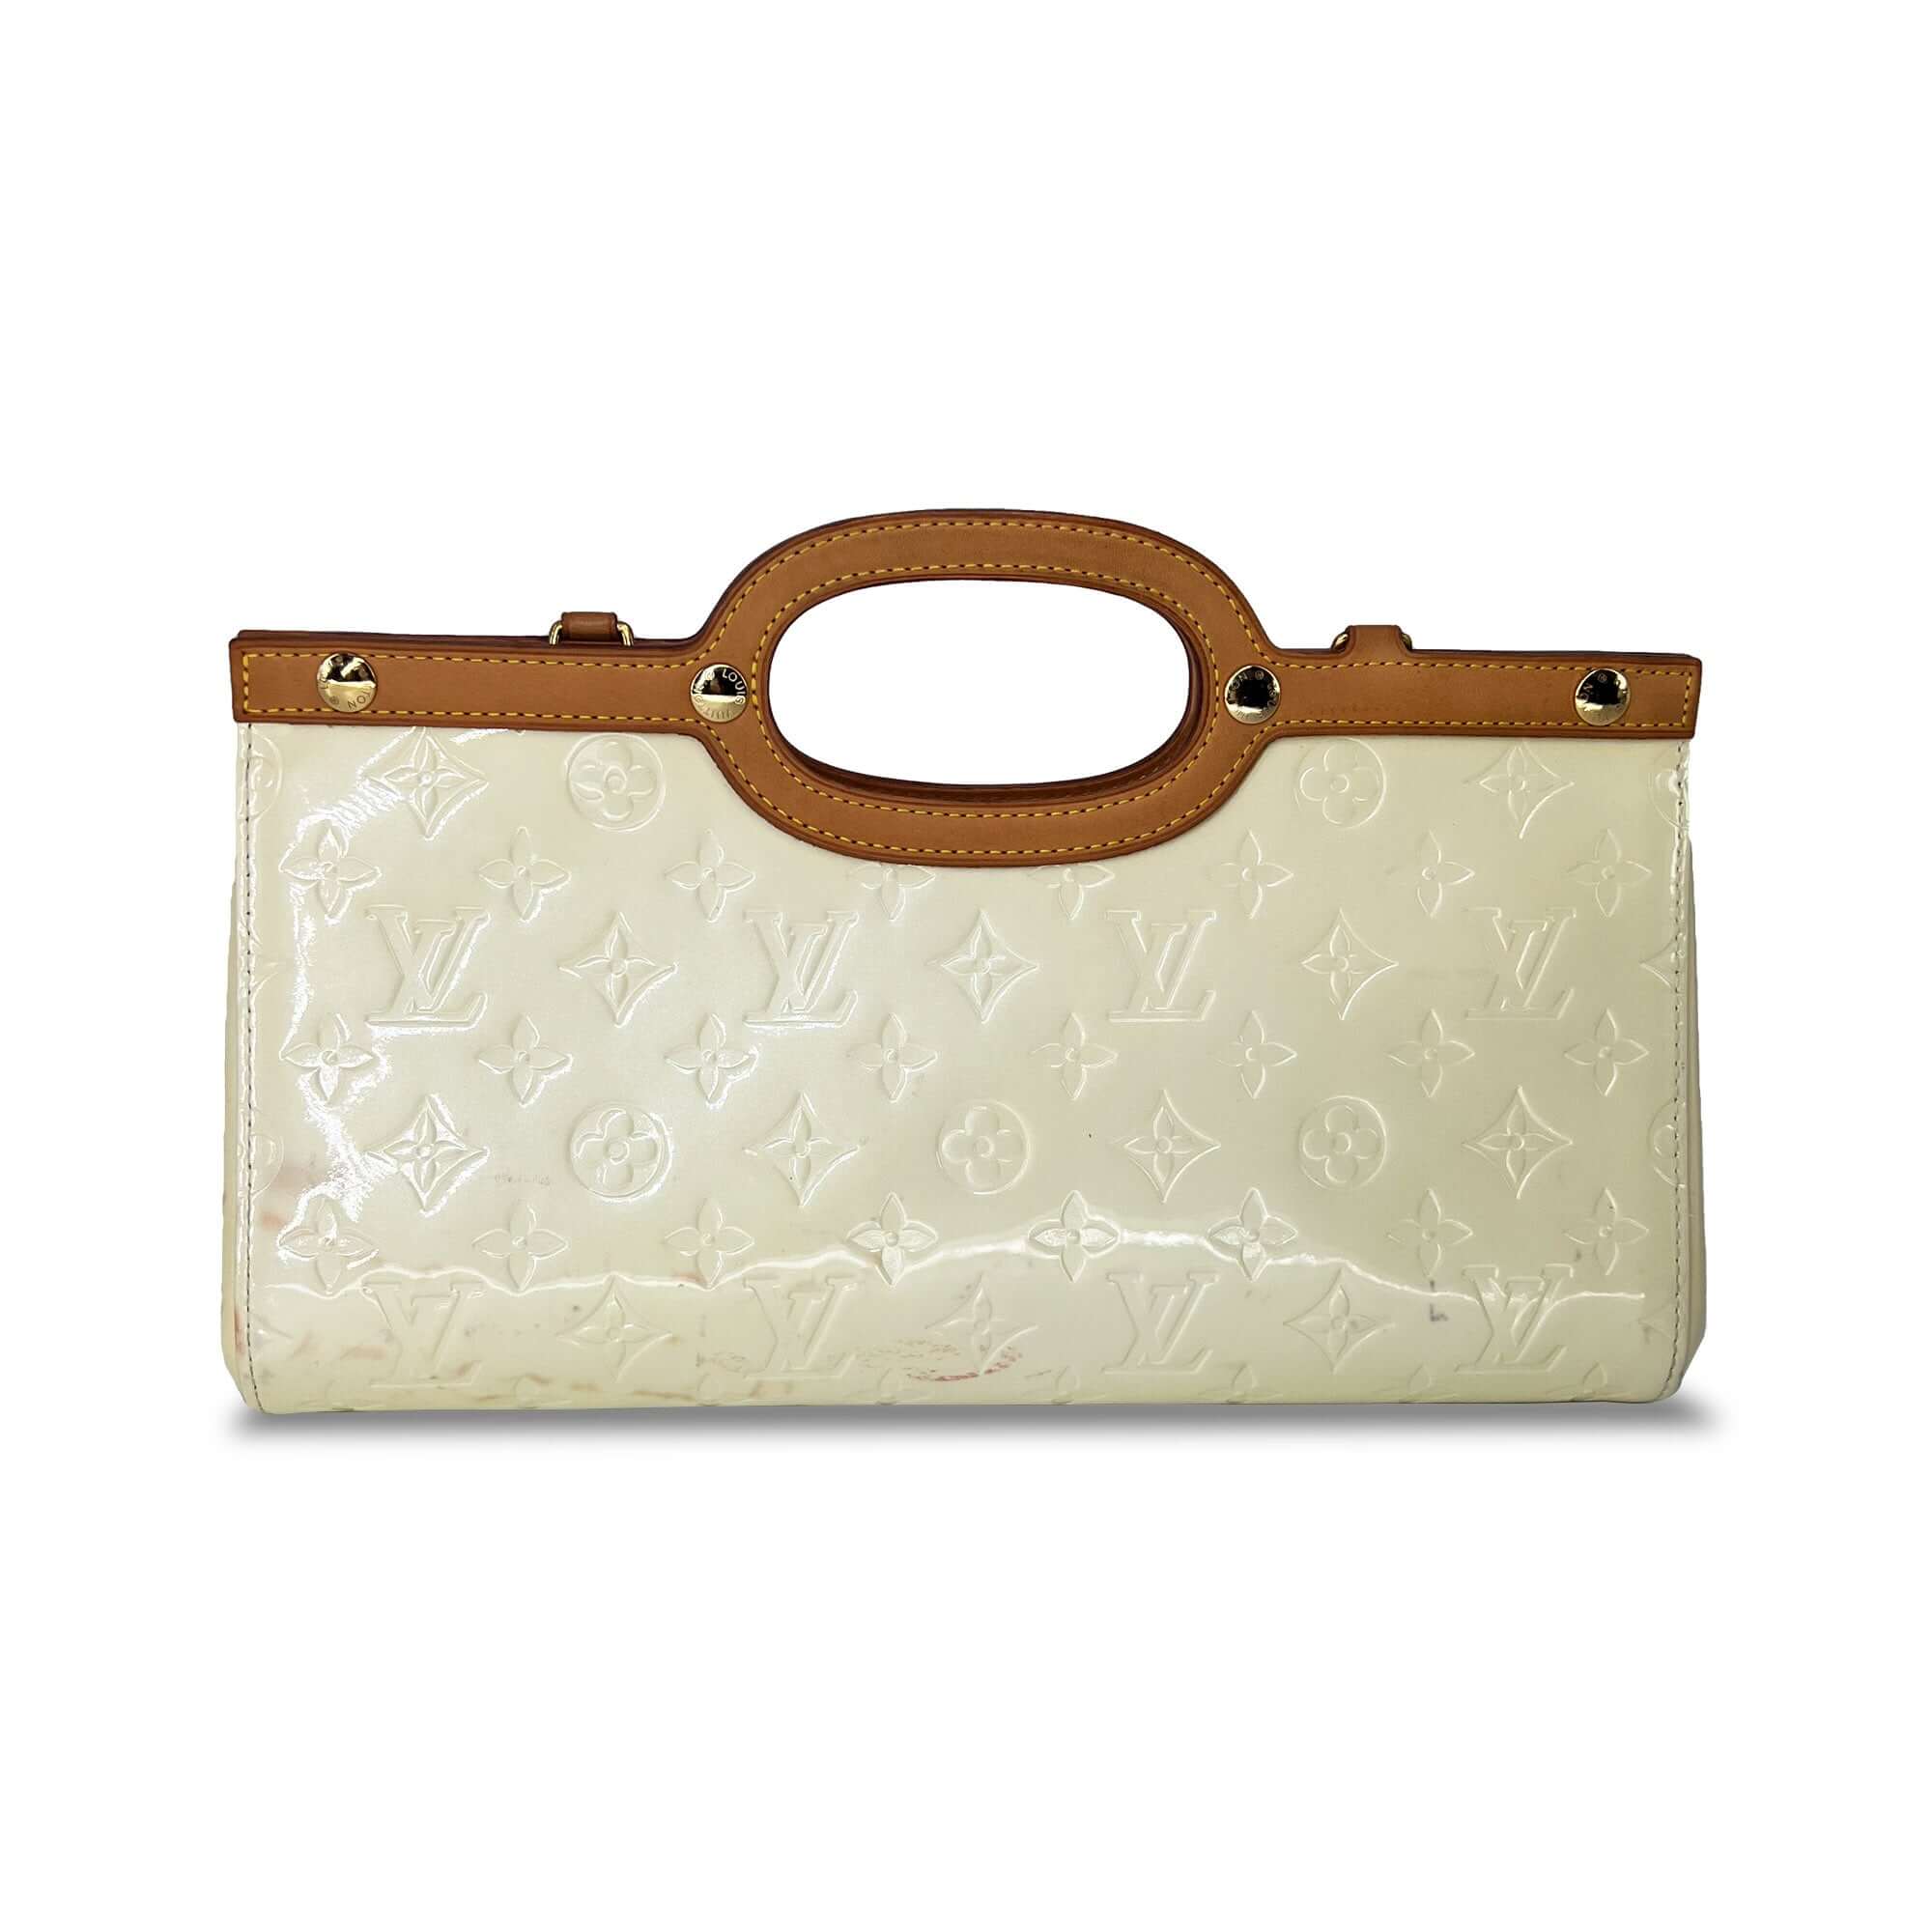 louis vuitton patent leather handbag